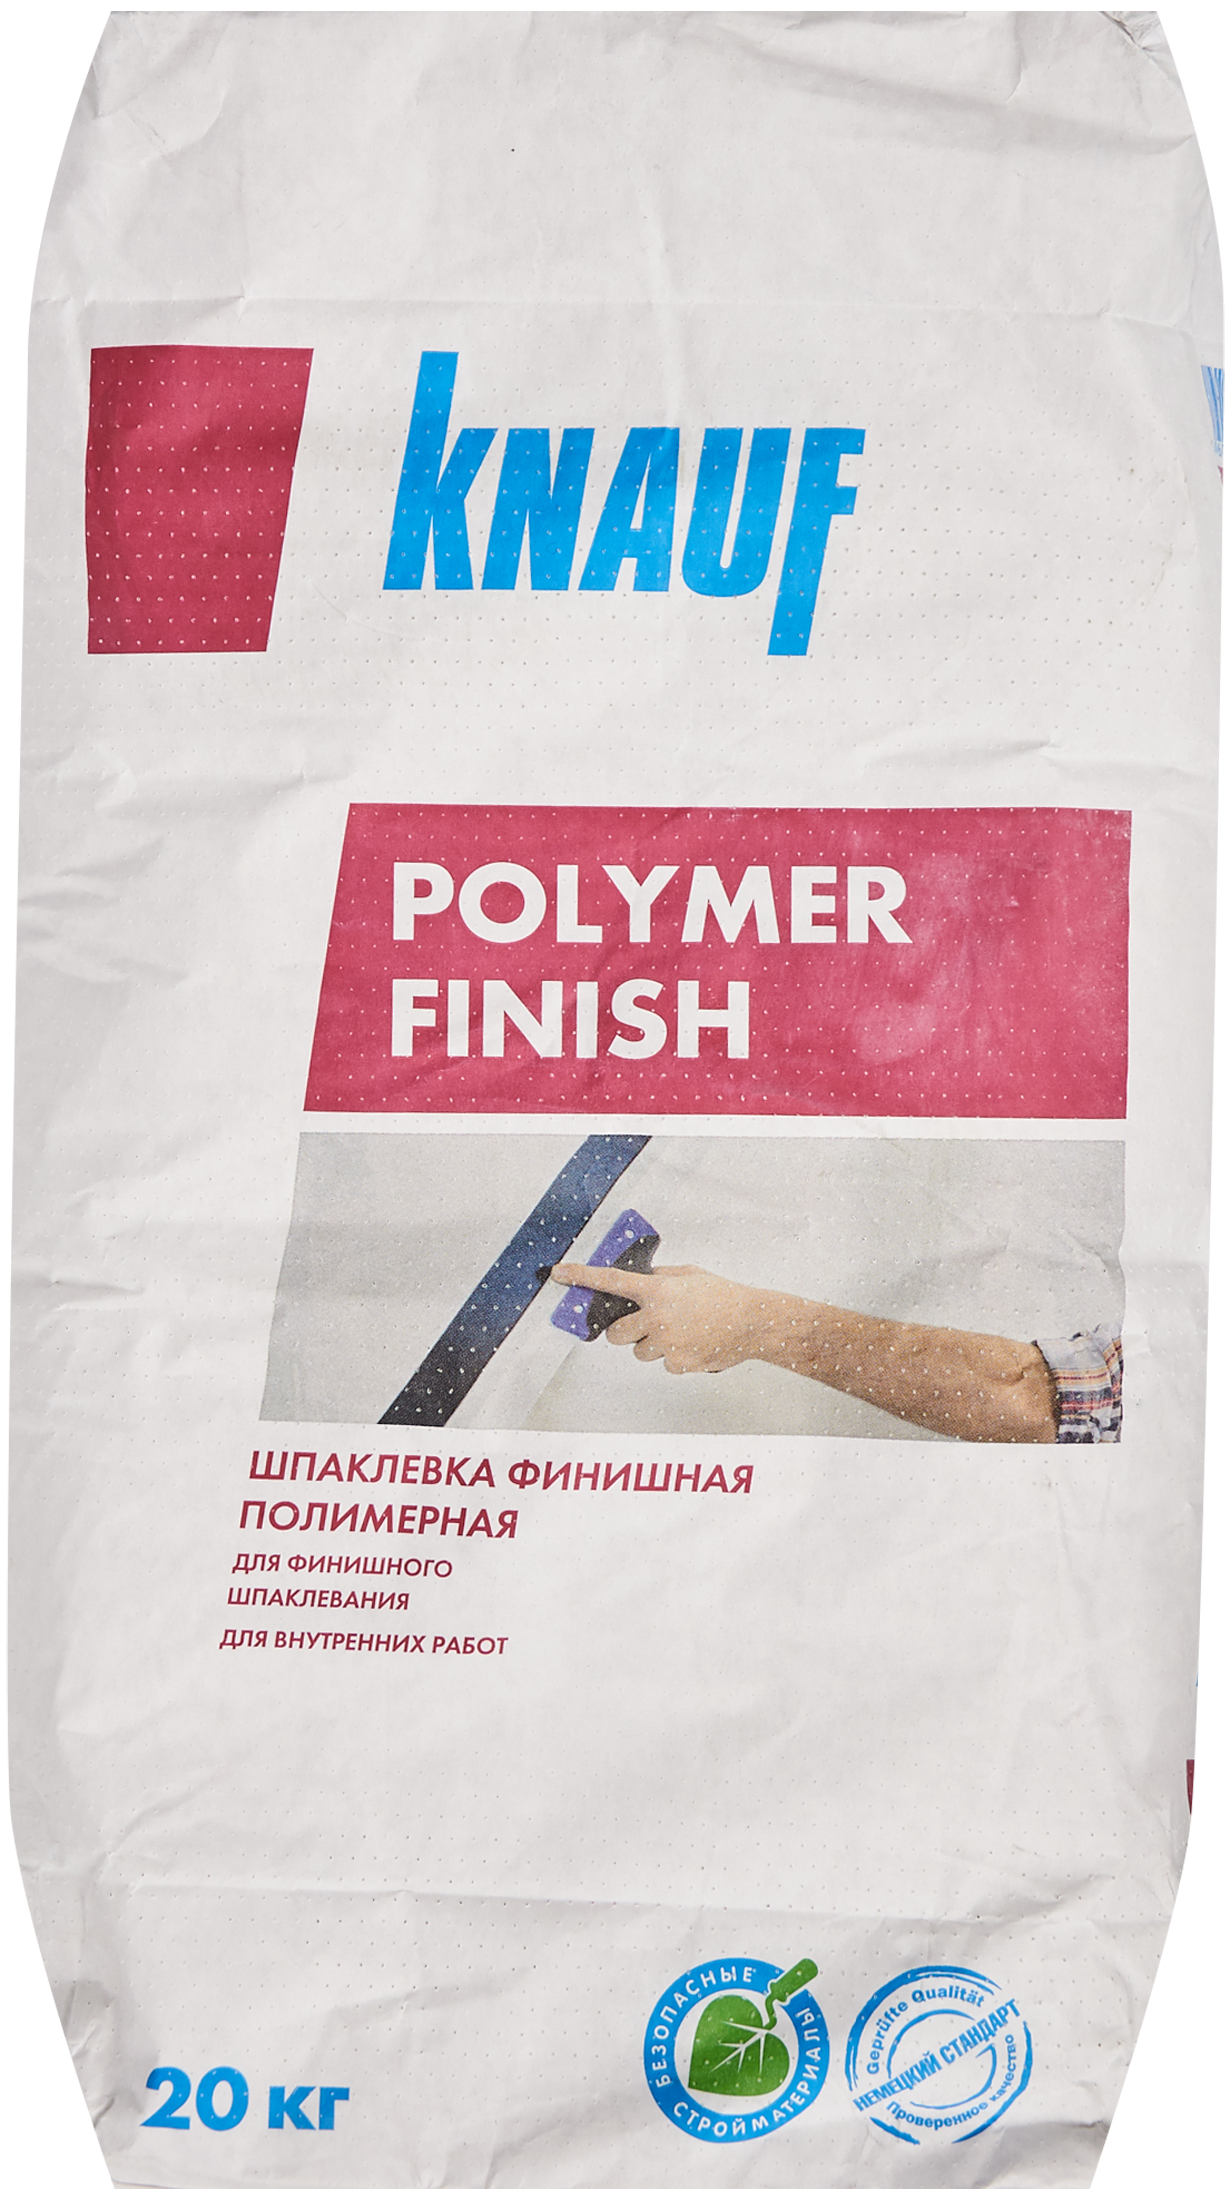 16551296 Шпаклёвка полимерная финишная Полимер финиш 20 кг Polymer finish STLM-0006924 KNAUF